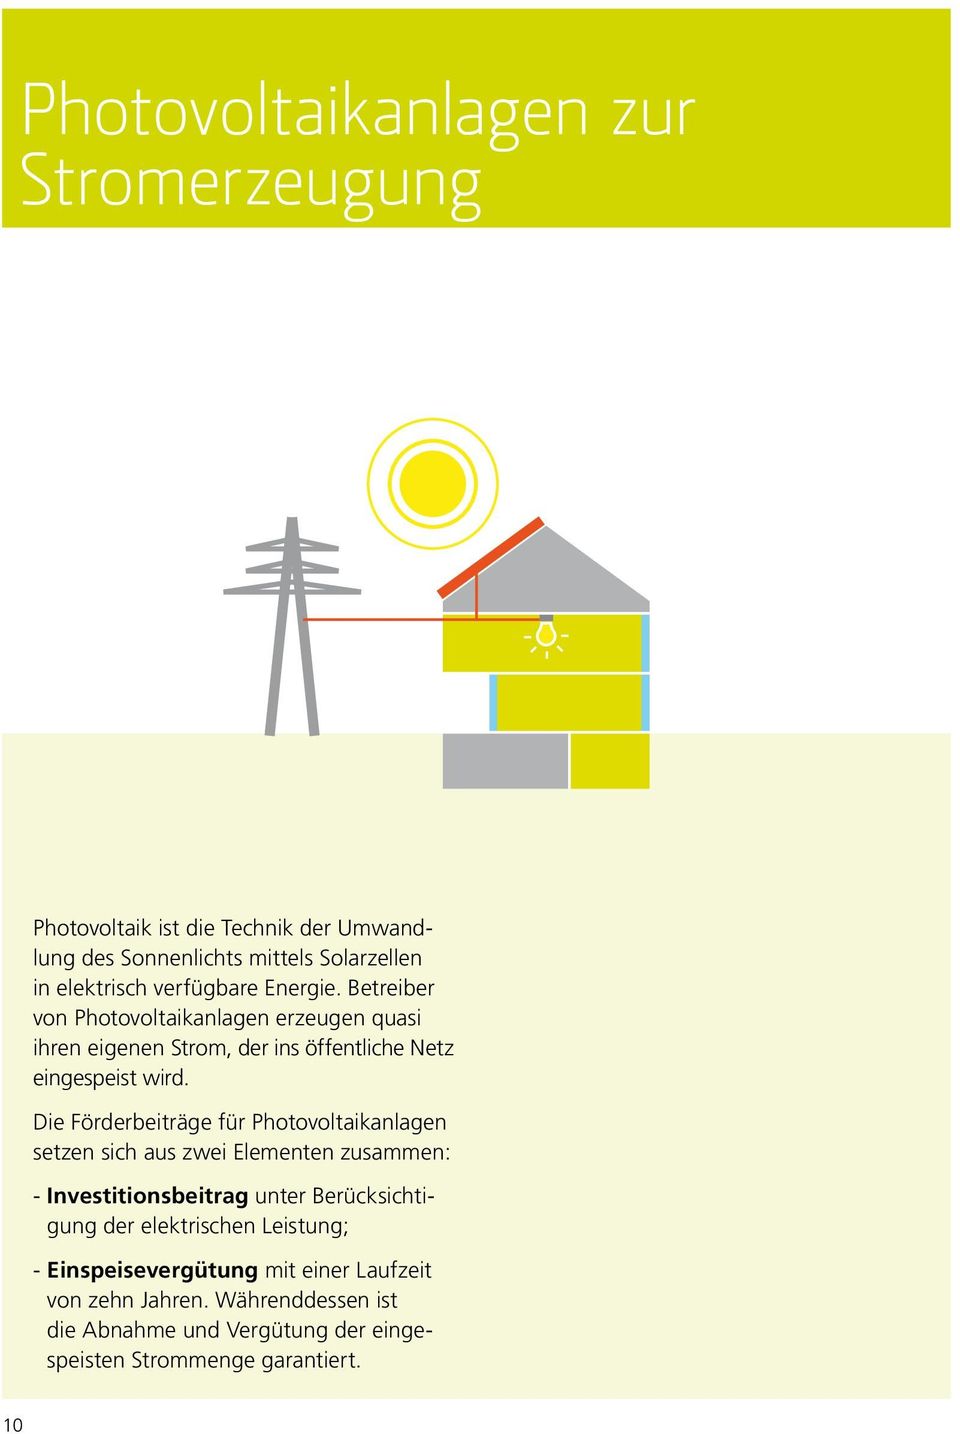 Die Förderbeiträge für Photovoltaikanlagen setzen sich aus zwei Elementen zusammen: - Investitionsbeitrag unter Berücksichtigung der